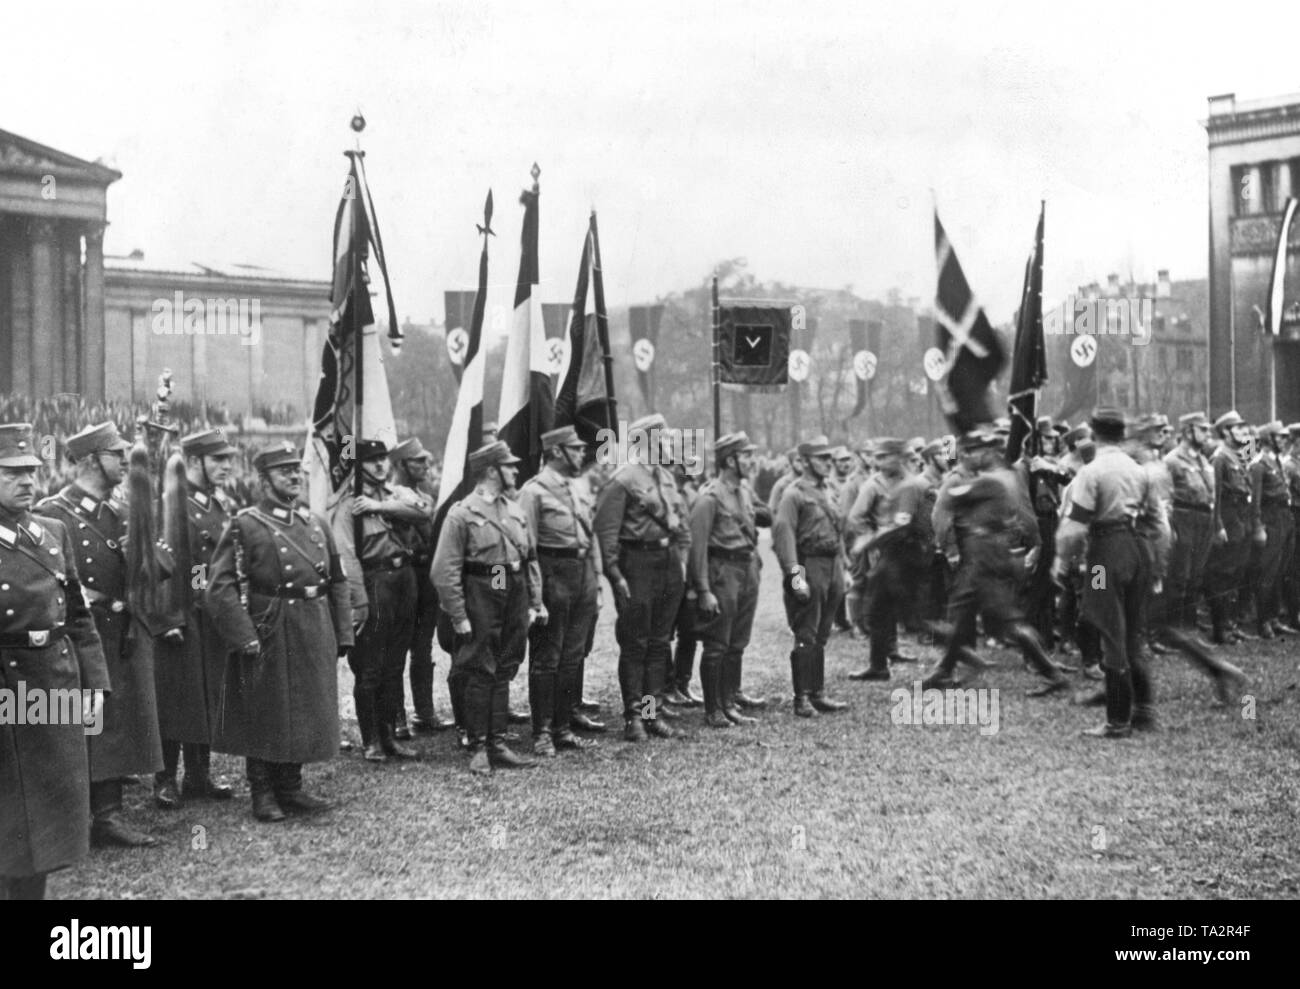 Anlässlich des 10. Jahrestages der Hitler Putsch (Beer Hall Putsch) in München, die Führer der ehemaligen Freikorps übergab ihre Fahnen in die Sturmabteilung (SA). Stockfoto